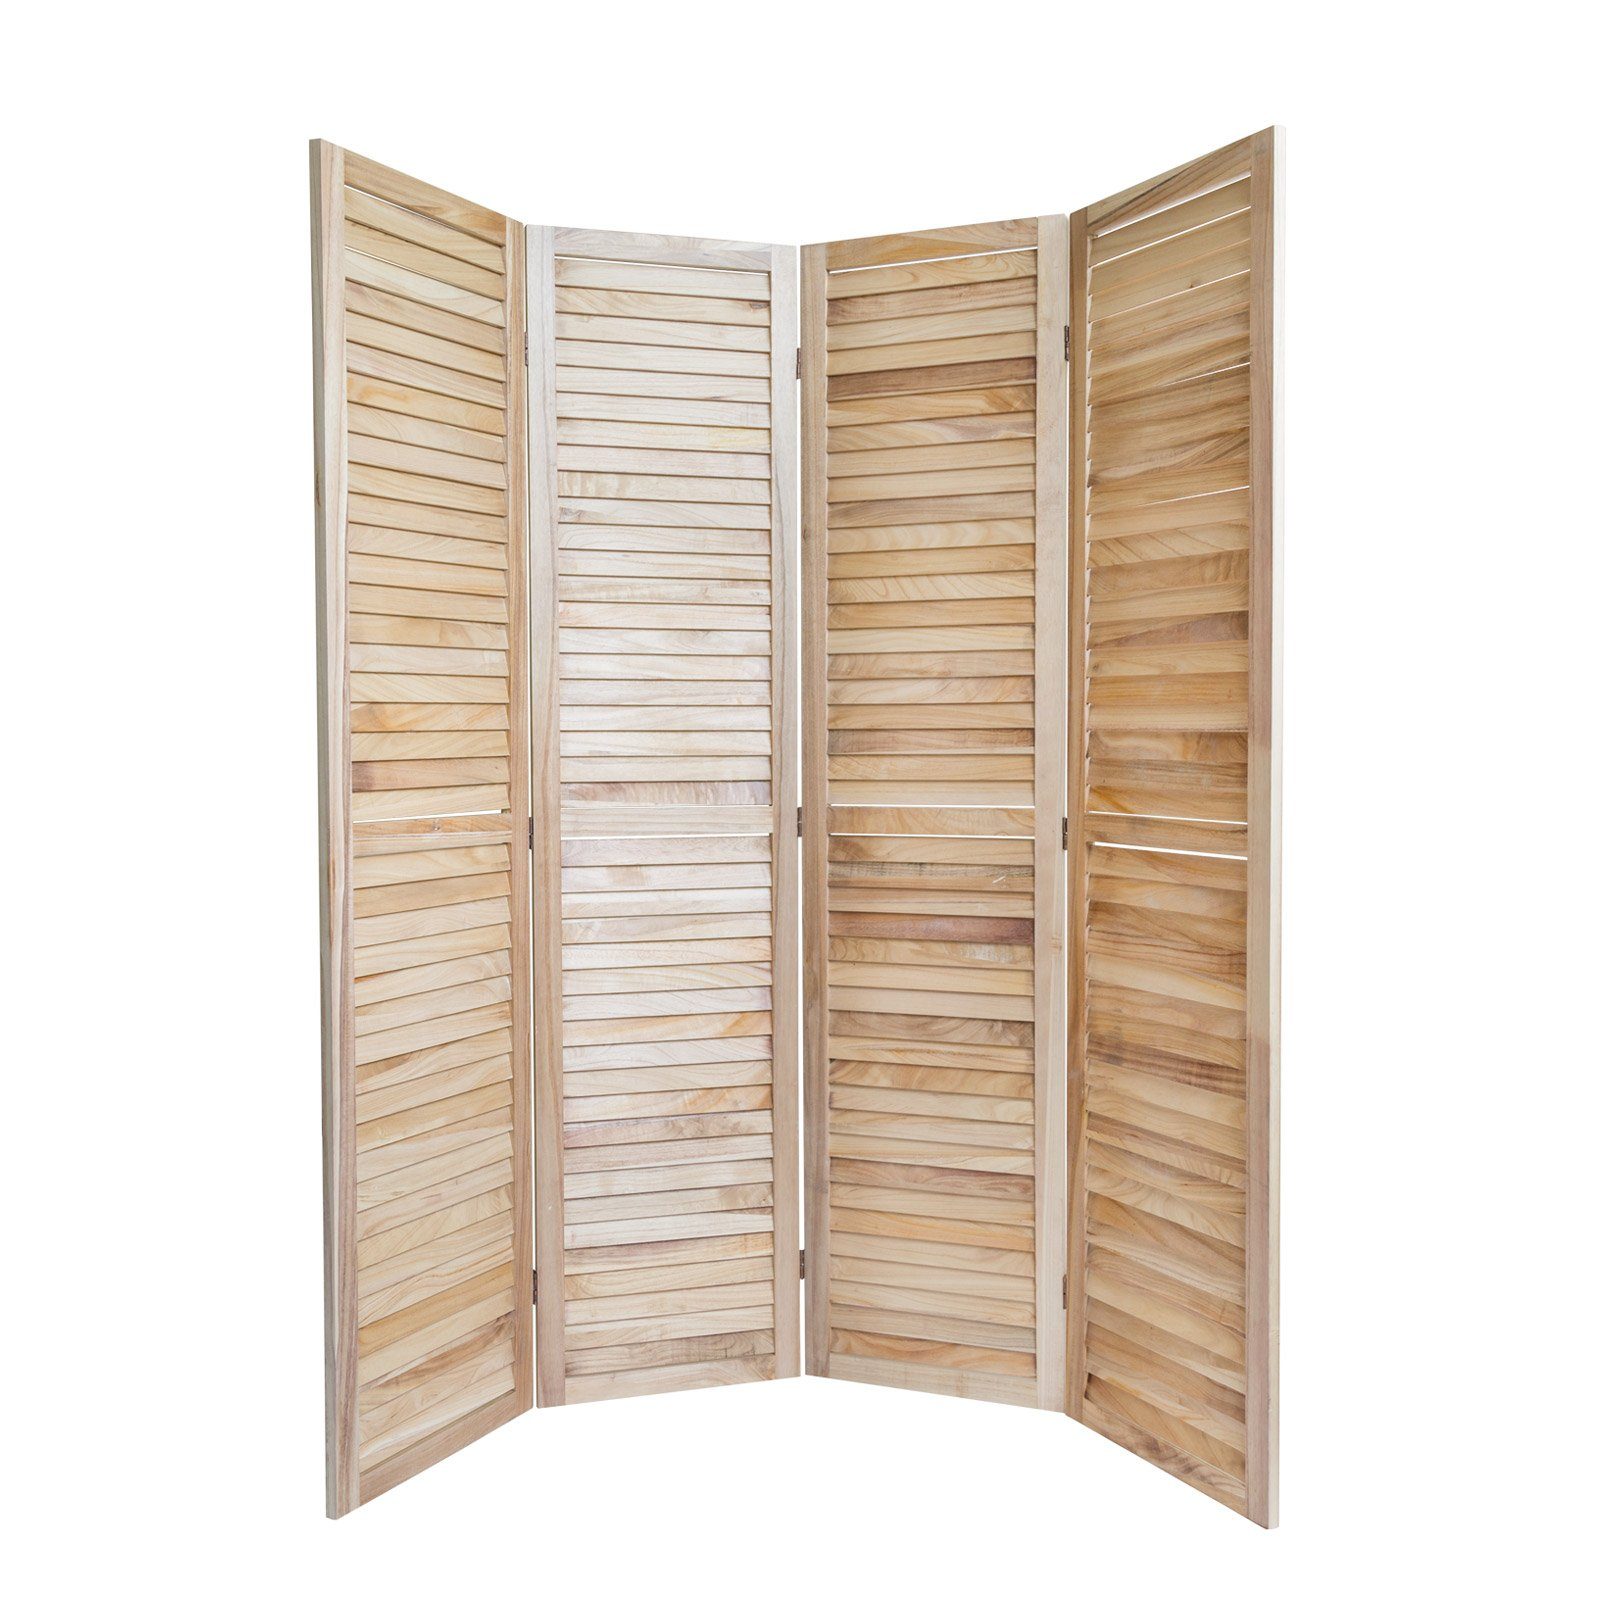 Homestyle4u Paravent Raumteiler Holz Trennwand spanische Wand Sichtschutz Indoor faltbar, 4-teilig